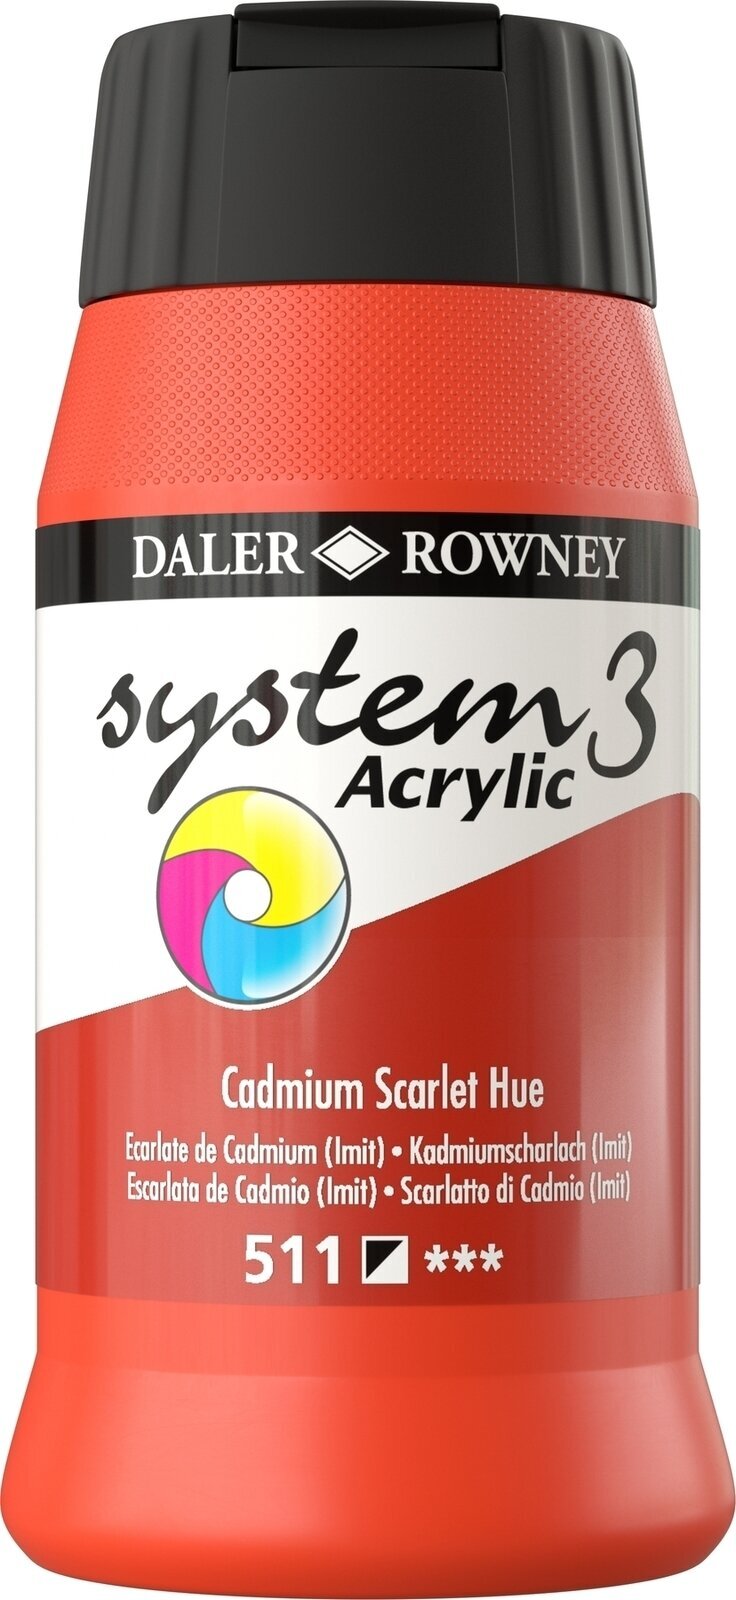 Pintura acrílica Daler Rowney System3 Acrylic Paint Cadmium Scarlet Hue 500 ml 1 pc